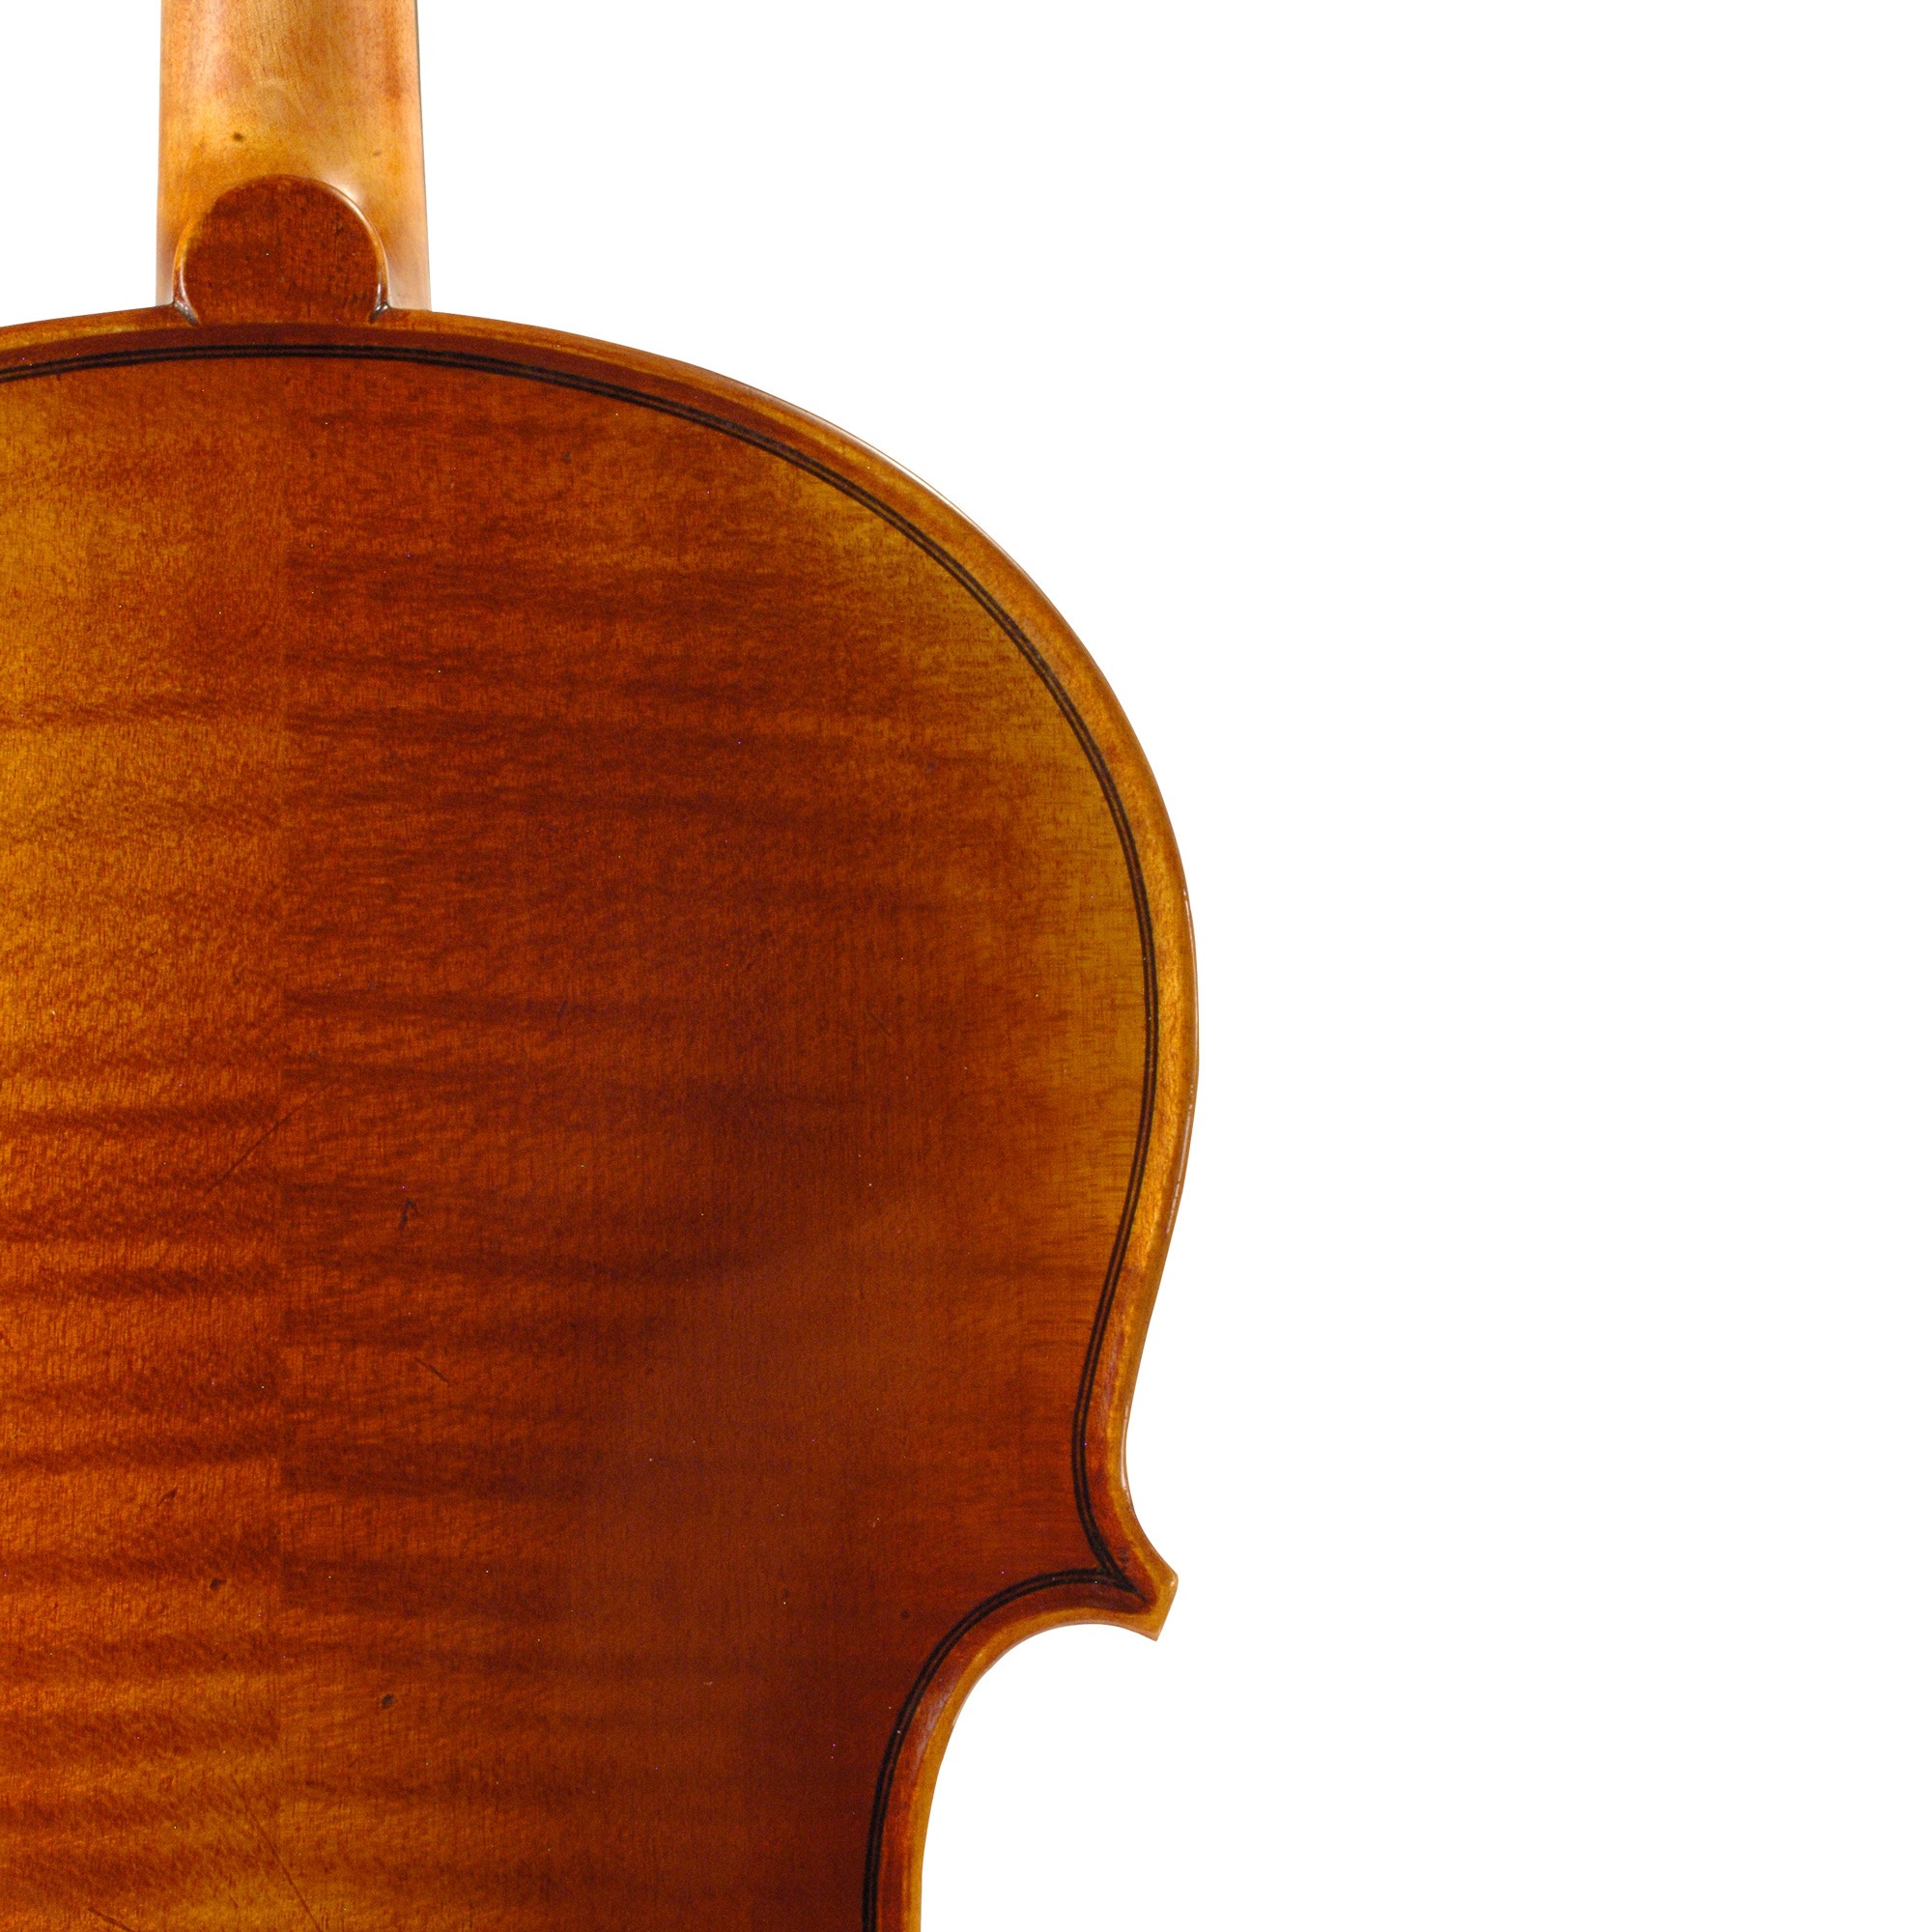 Yuan Qin Original Viola